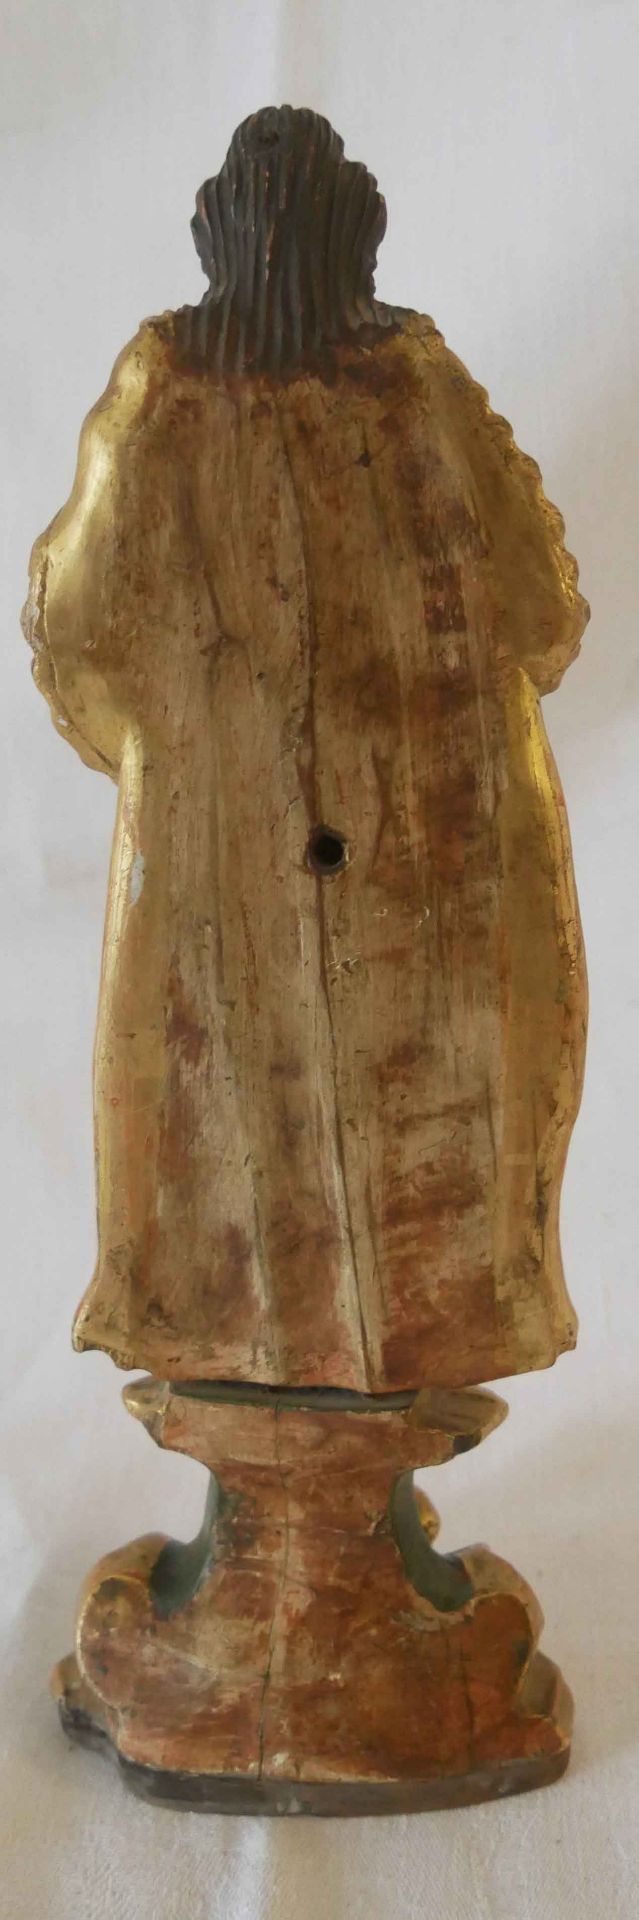 geschnitzte Holzfigur, Arm abgebrochen. Höhe ca. 26 cm um 1820 - Bild 2 aus 2